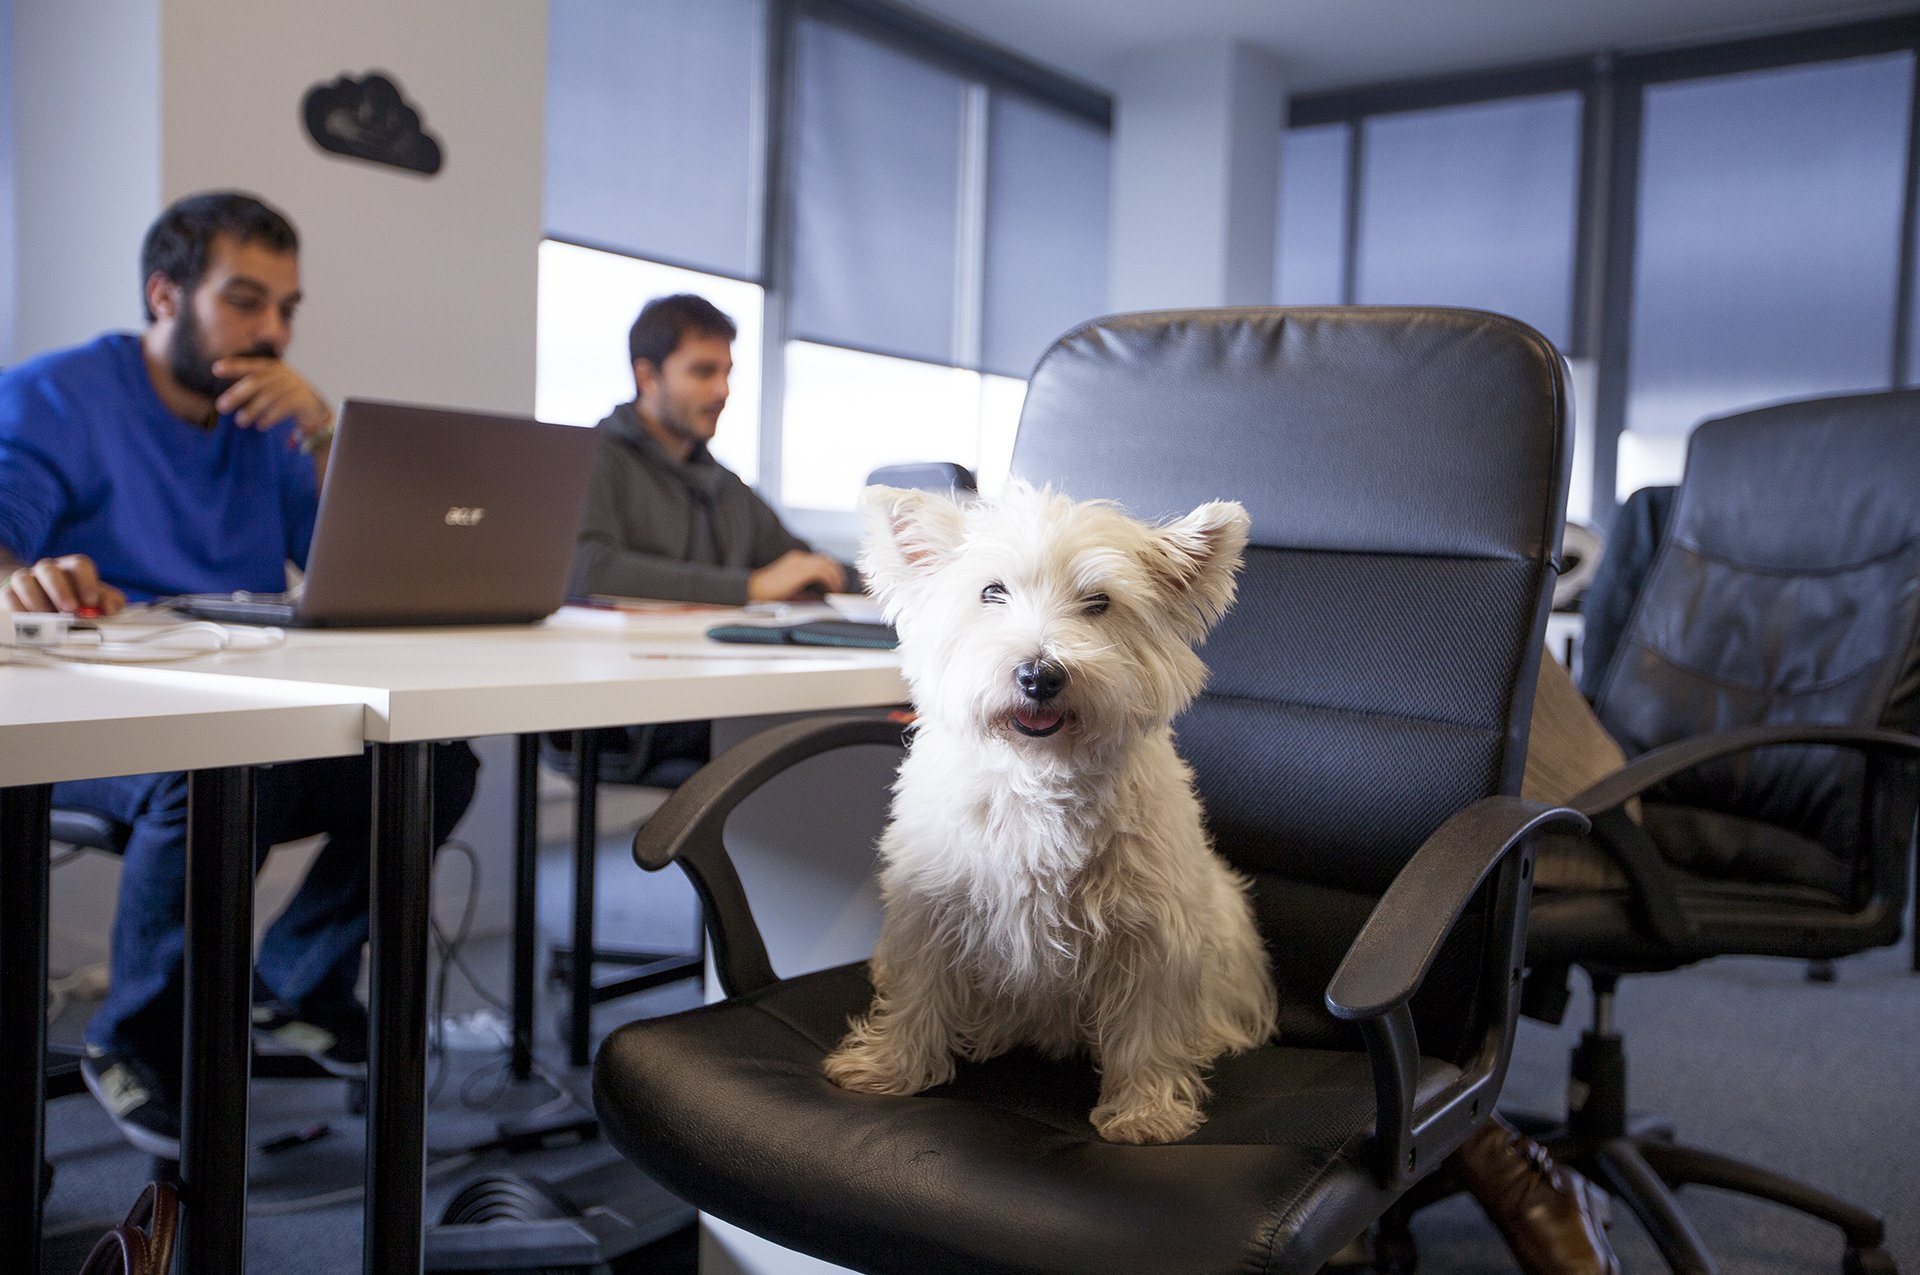 Animali domestici in ufficio, sempre più aziende lo rendono possibile